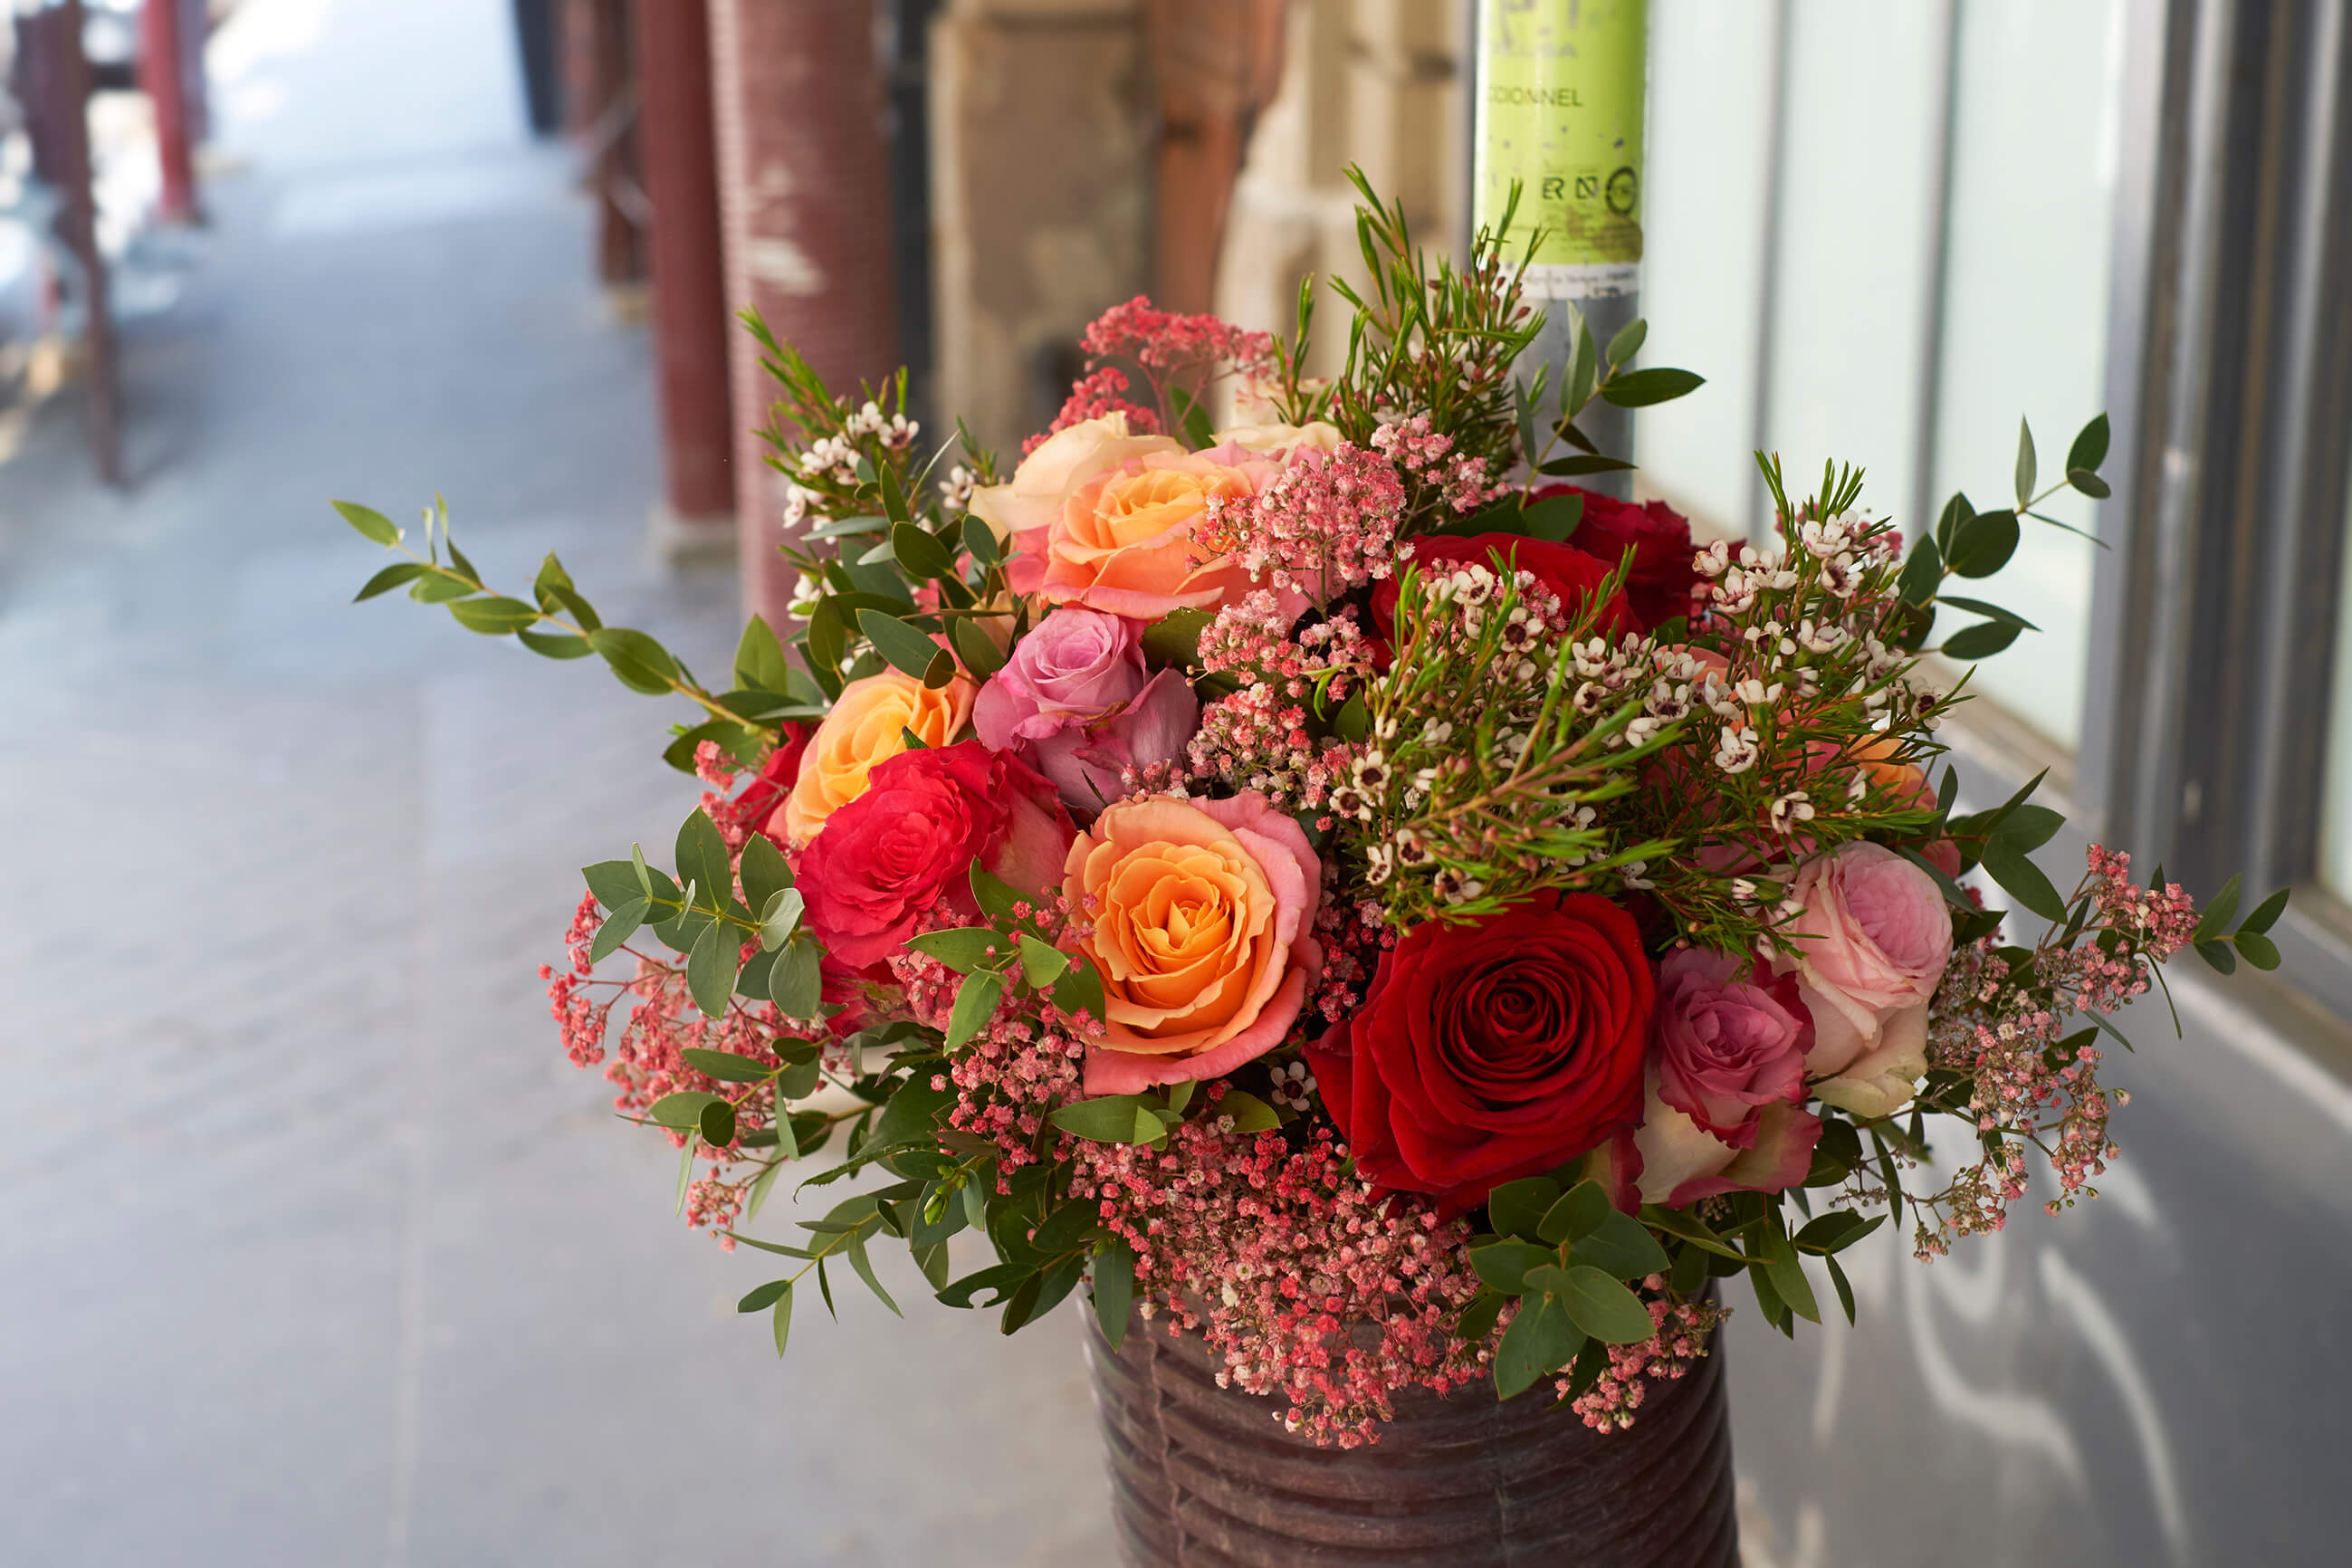 Best Florists & Flower Shops in Plainview, TX - 2023